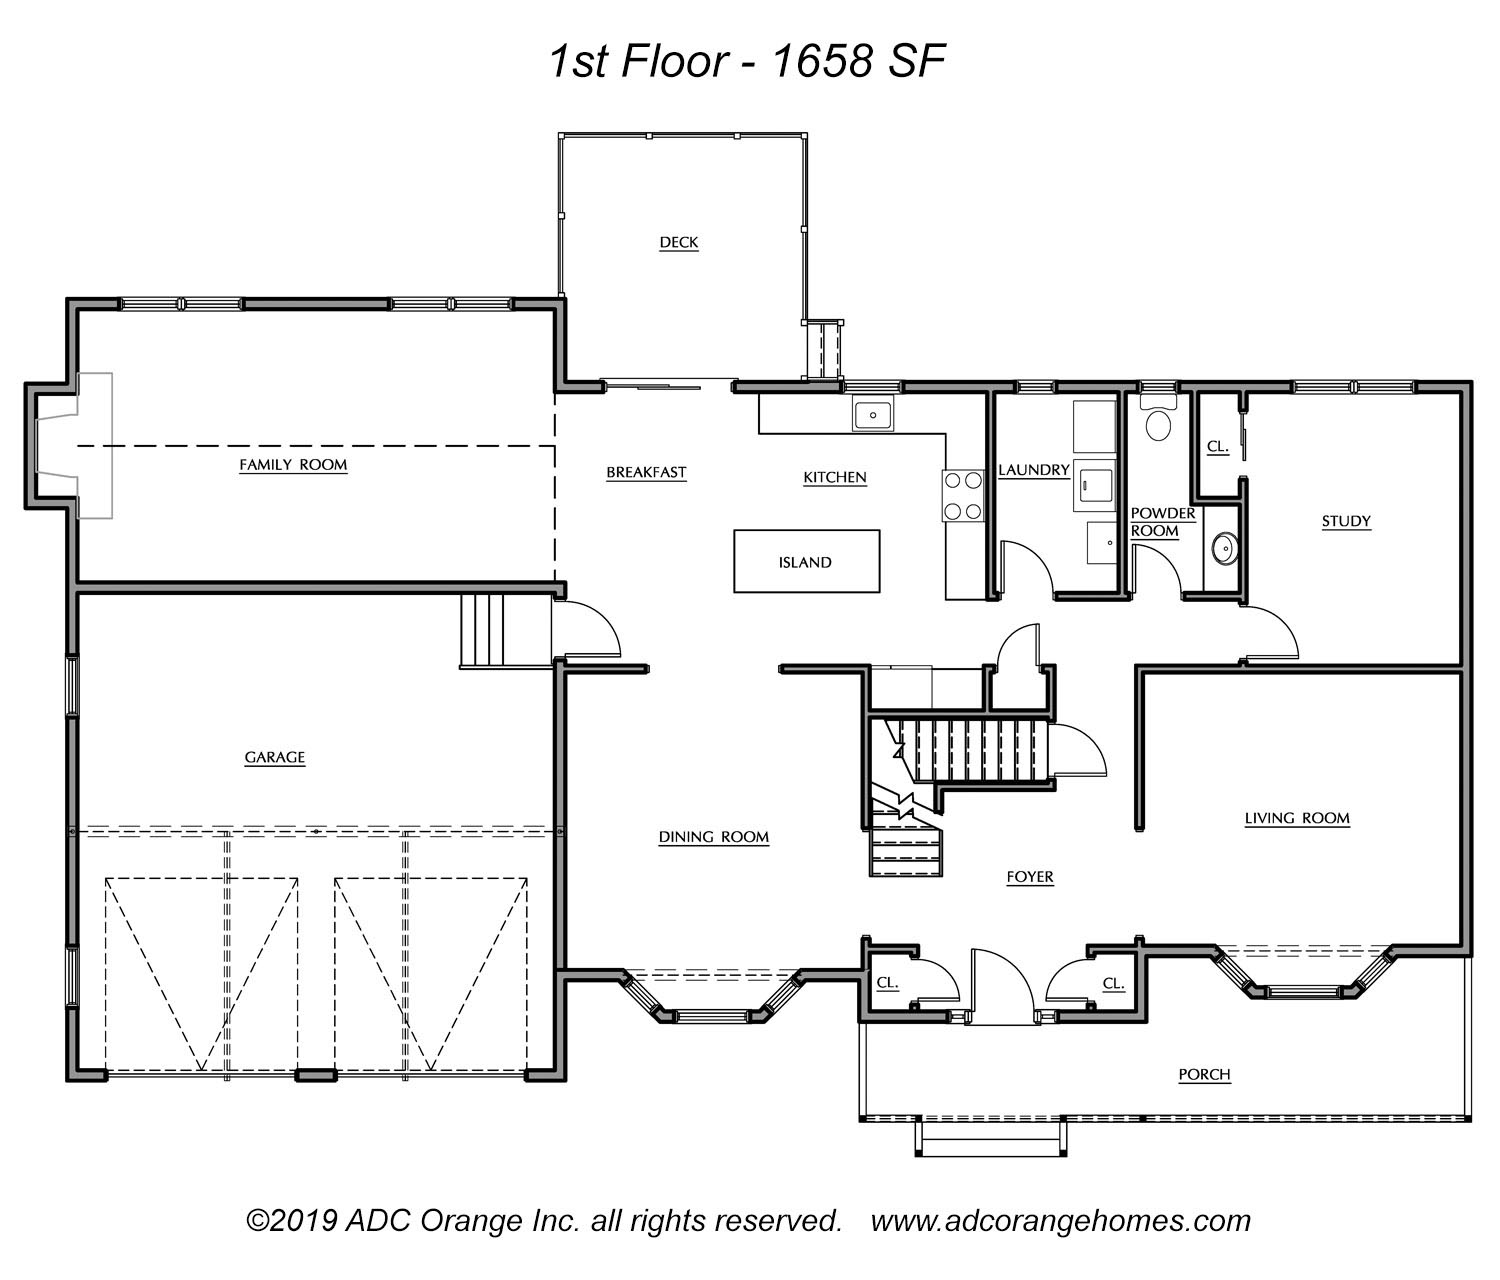 1st Floor Plan for Carmel - New Home in Orange County, New York